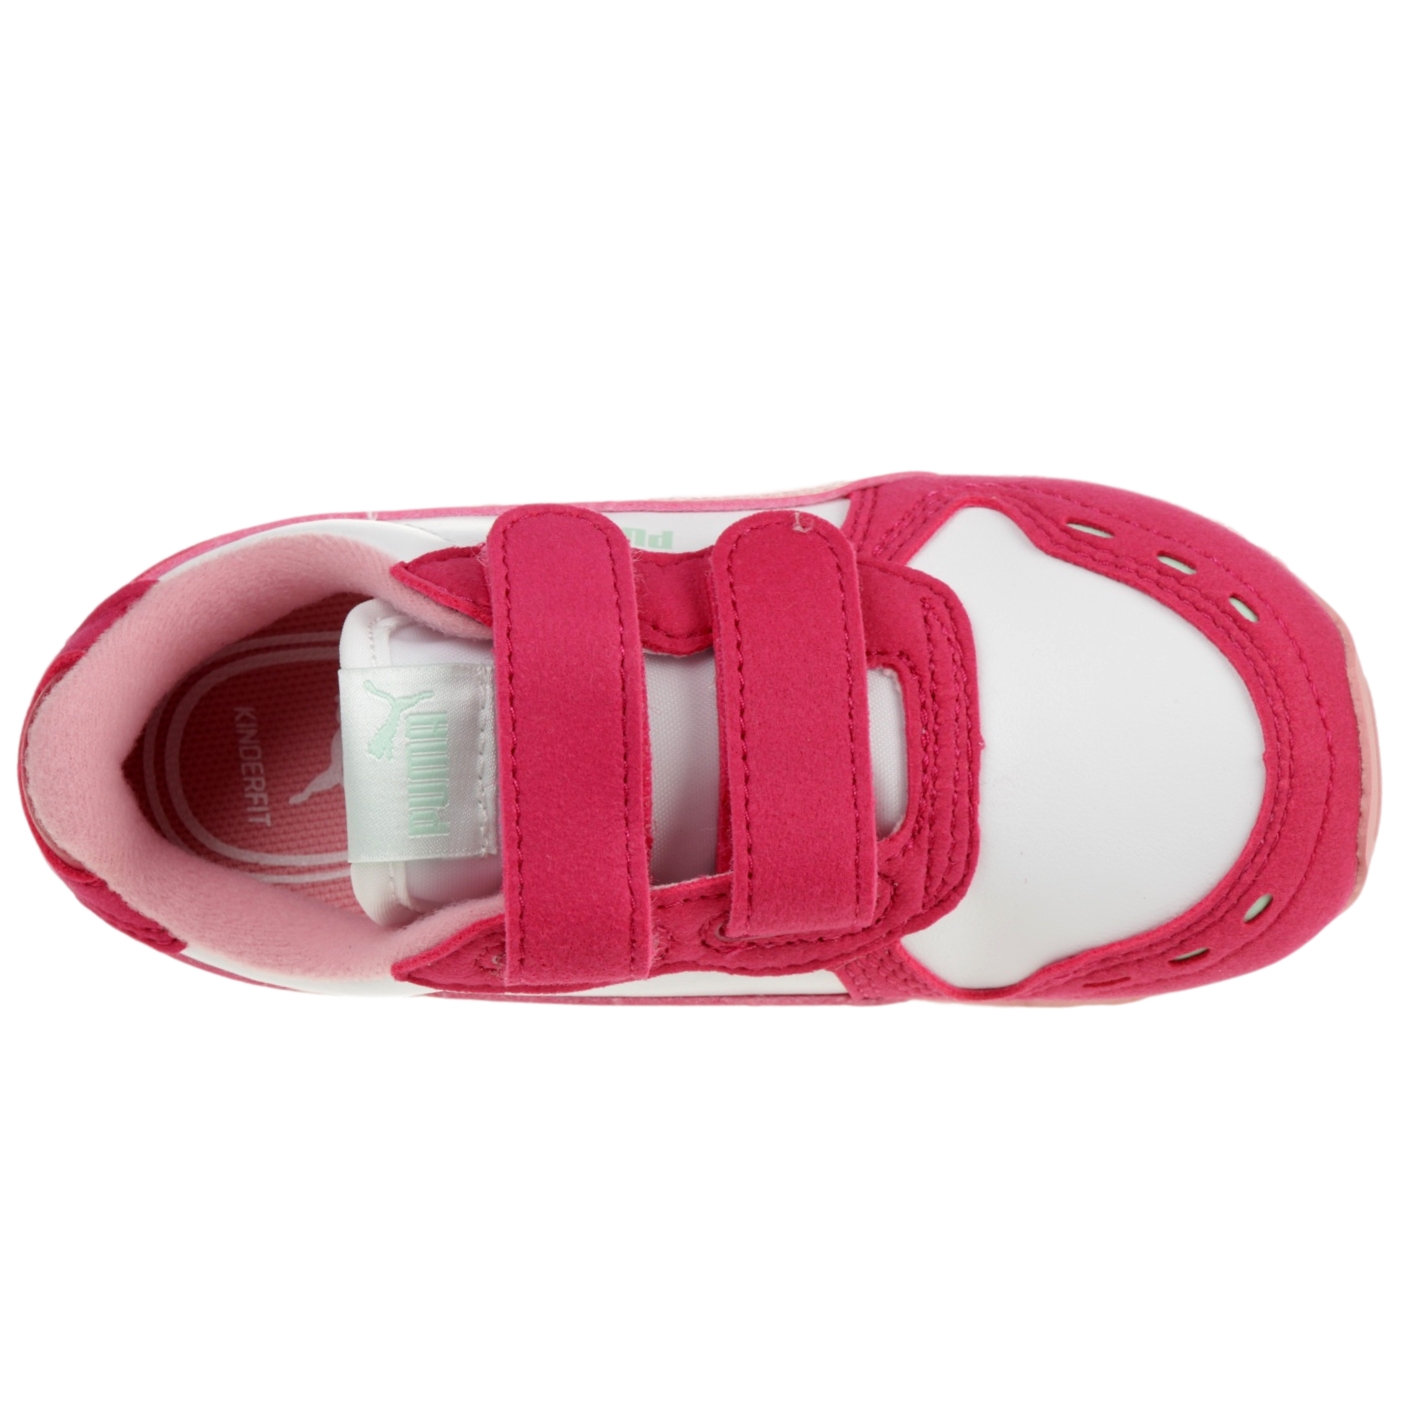 PUMA Cabana Racer SL V Inf Kinder Sneaker Schuhe 351980 Pink